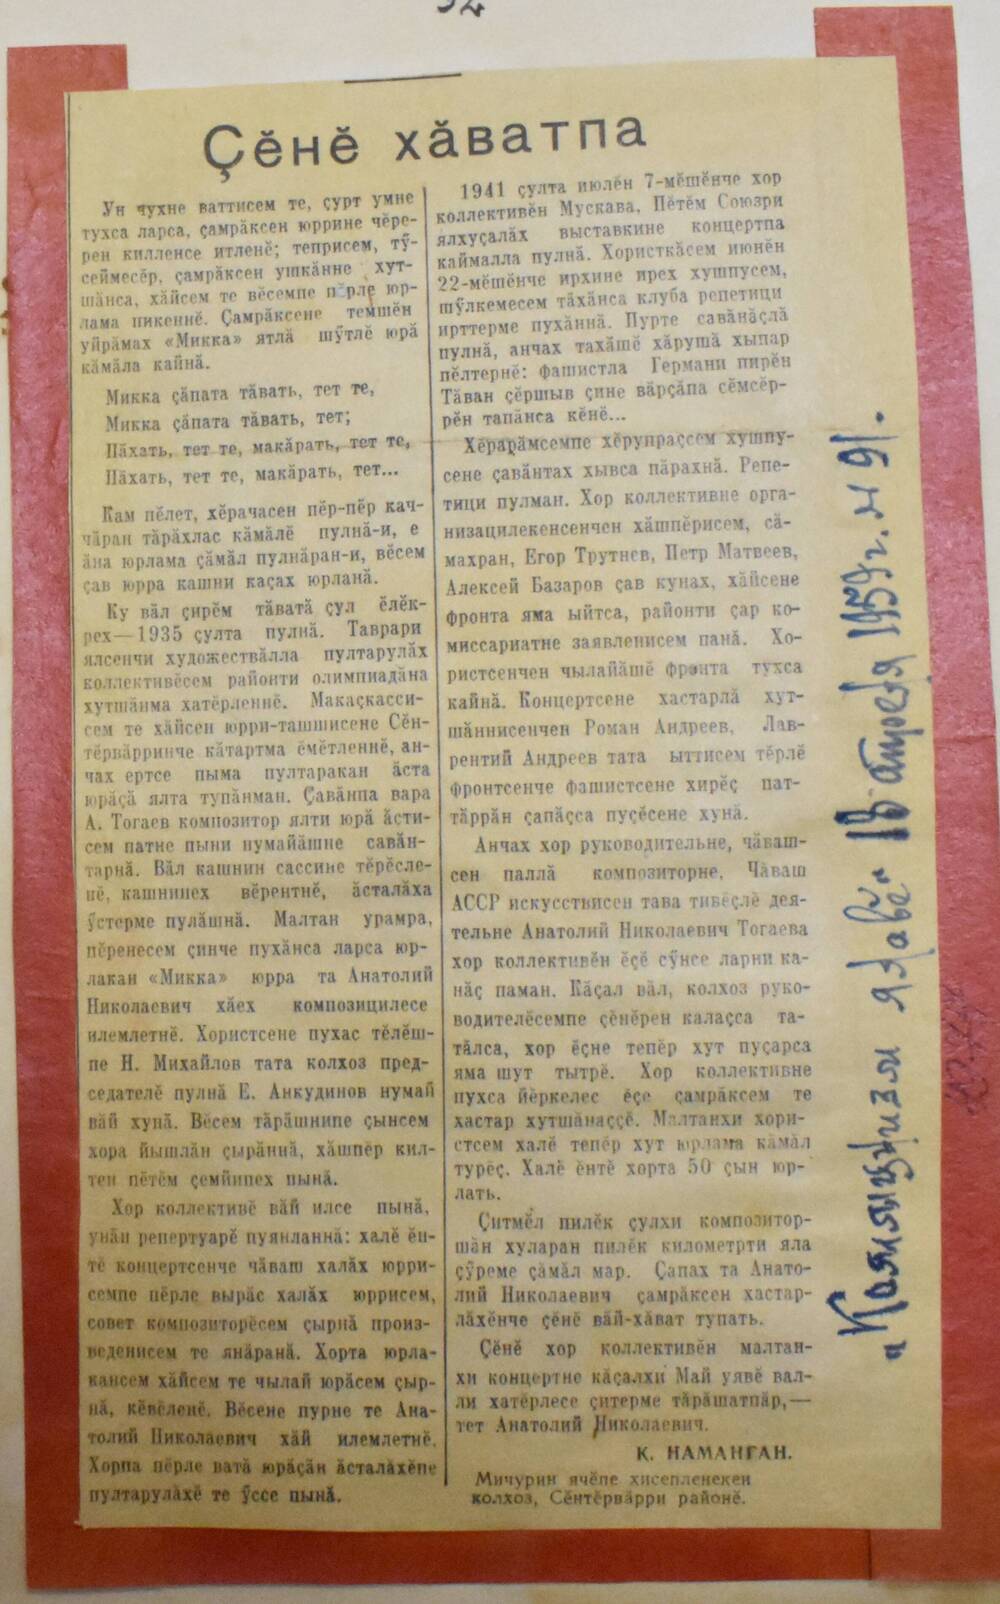 Вырезка из газеты Коммунизм ялаве № 91 от 18 апреля 1959